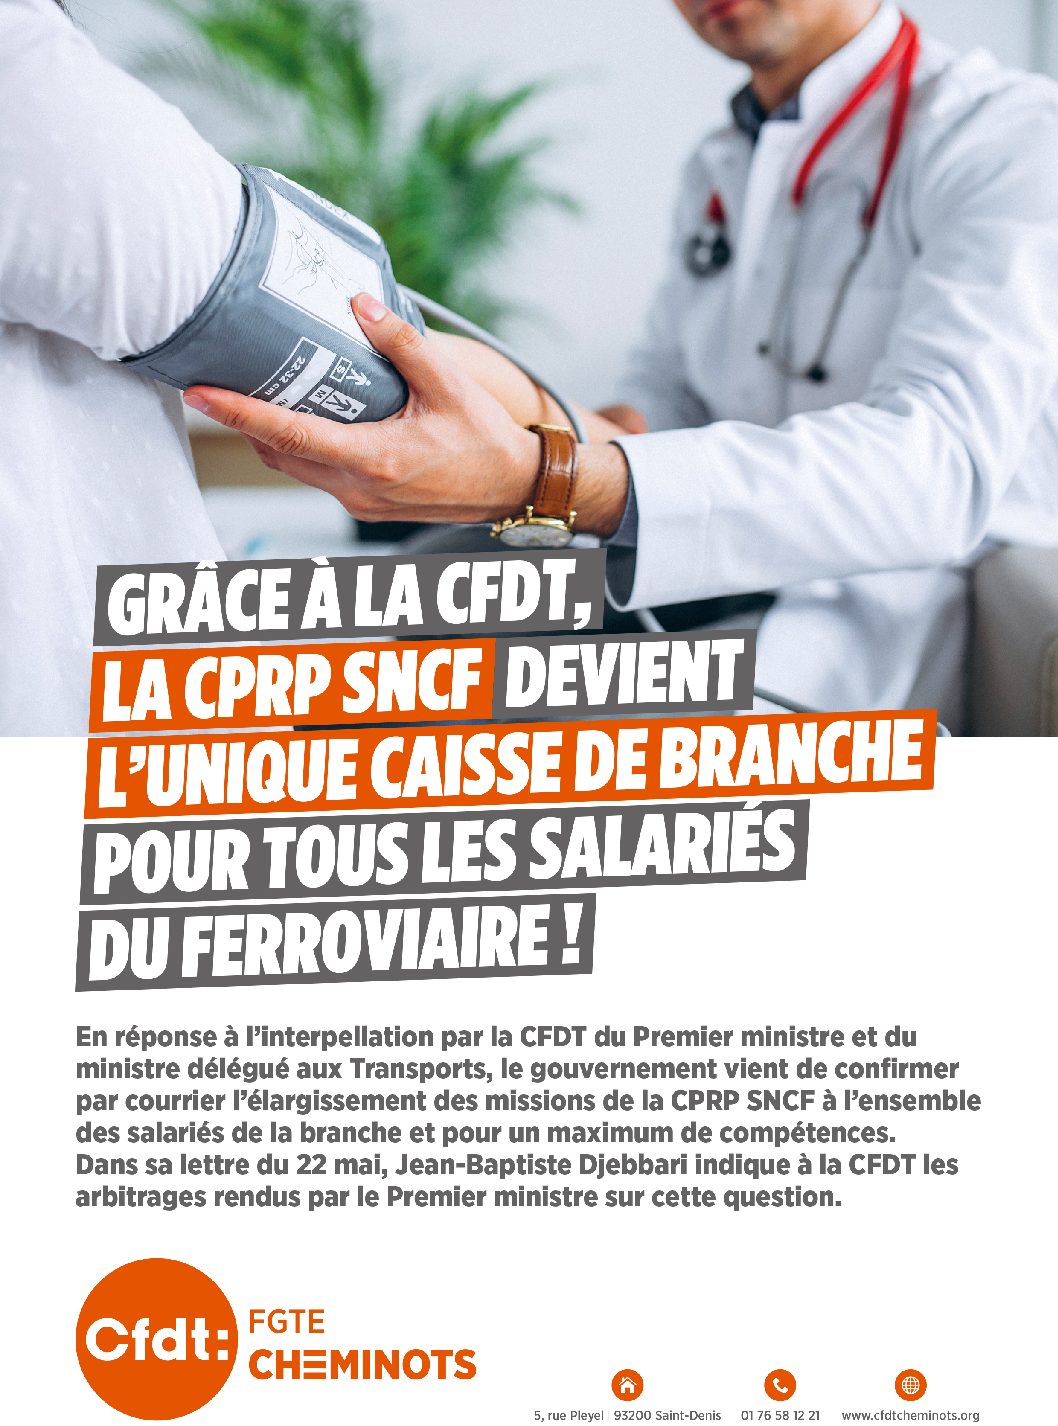 Grâce à la CFDT, la CPRP SNCF devient l’unique caisse de branche pour tous les salariés du ferroviaire !